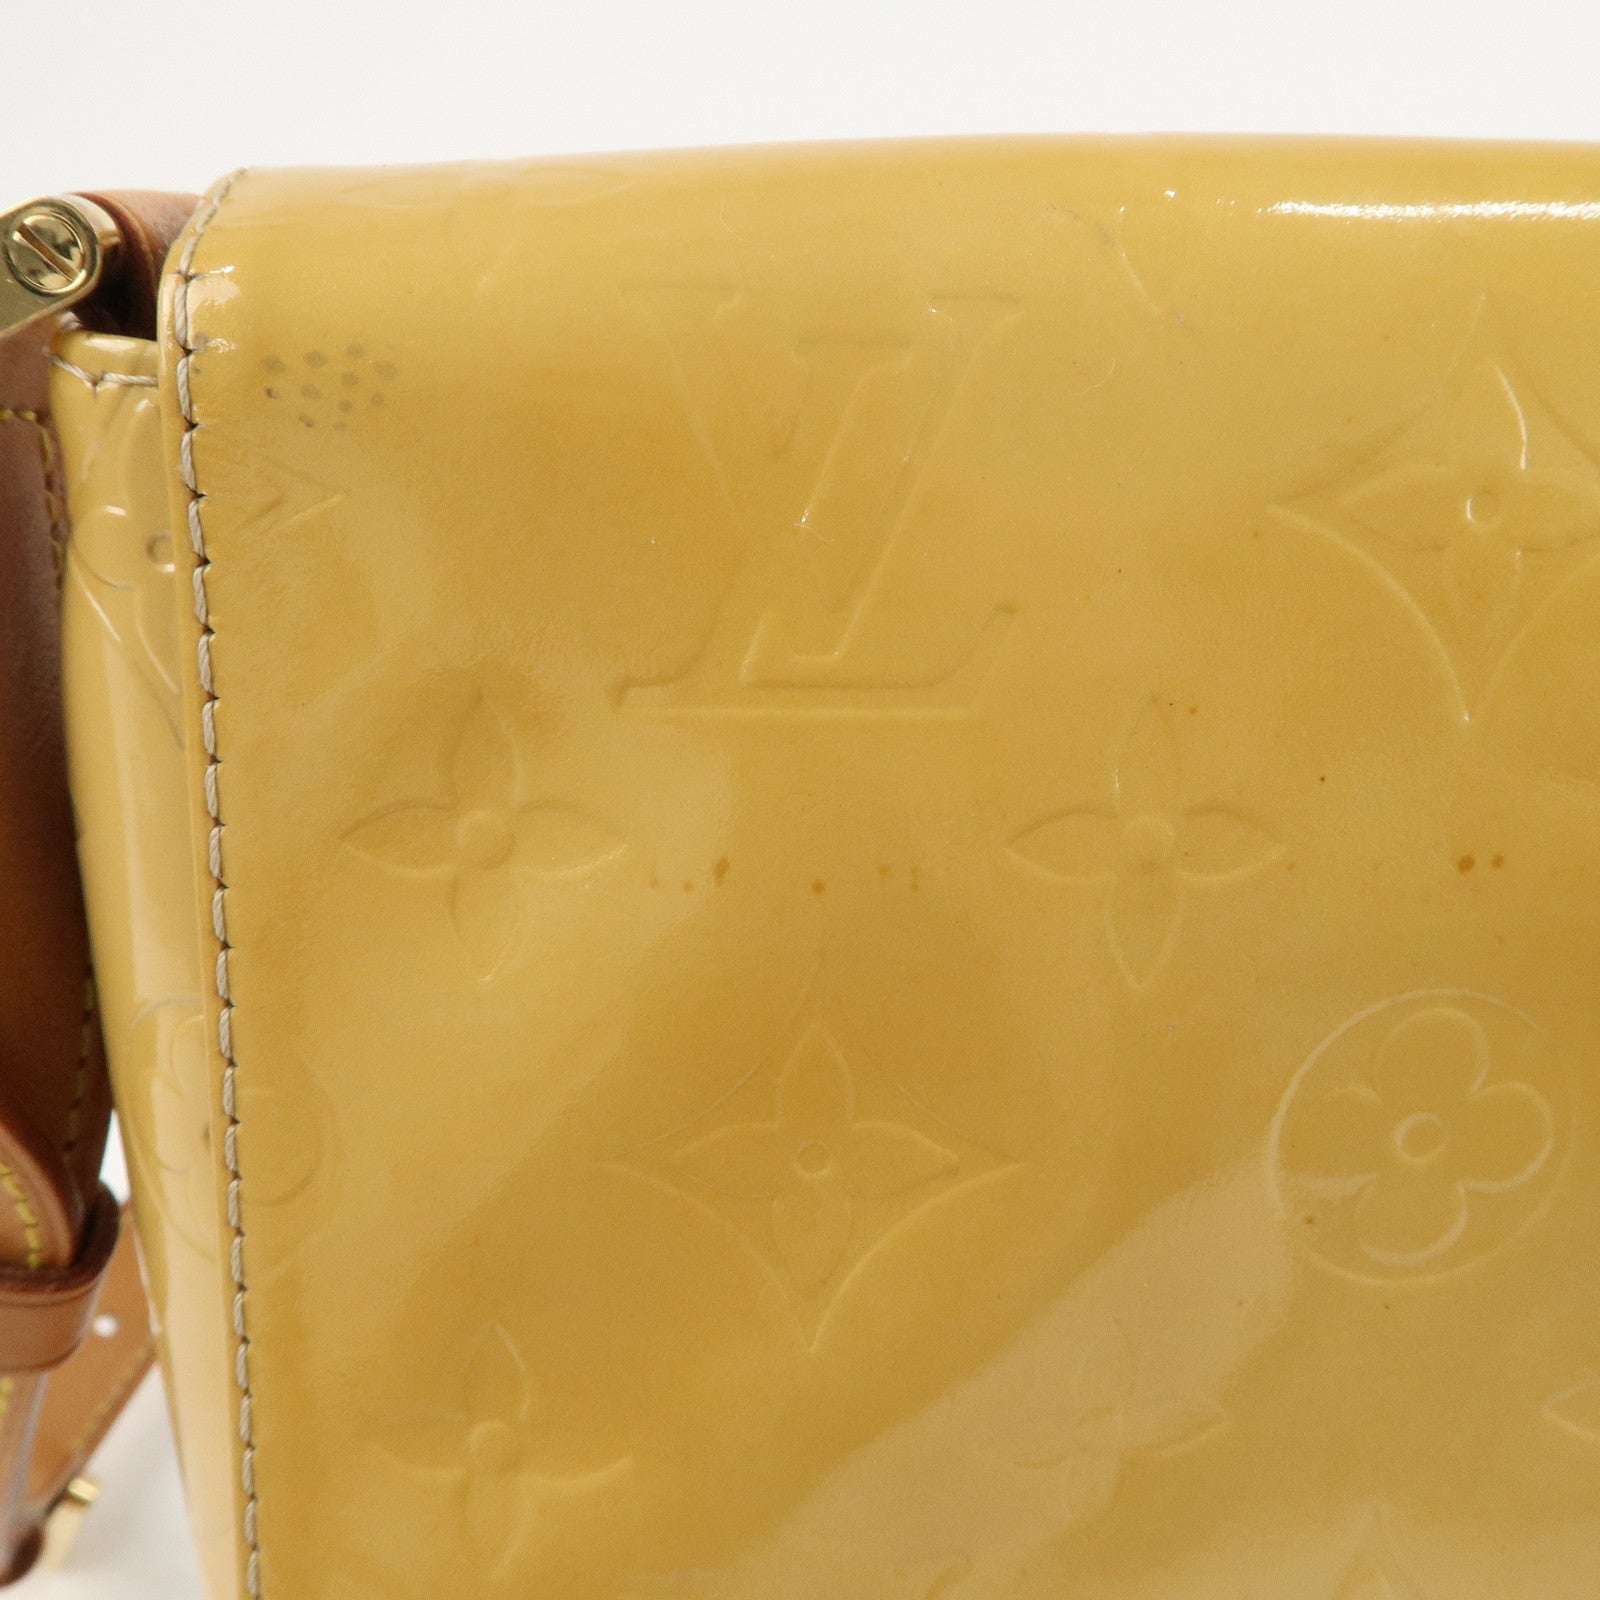 Louis Vuitton Thompson Street M91008 Vernis Leather Shoulder Bag